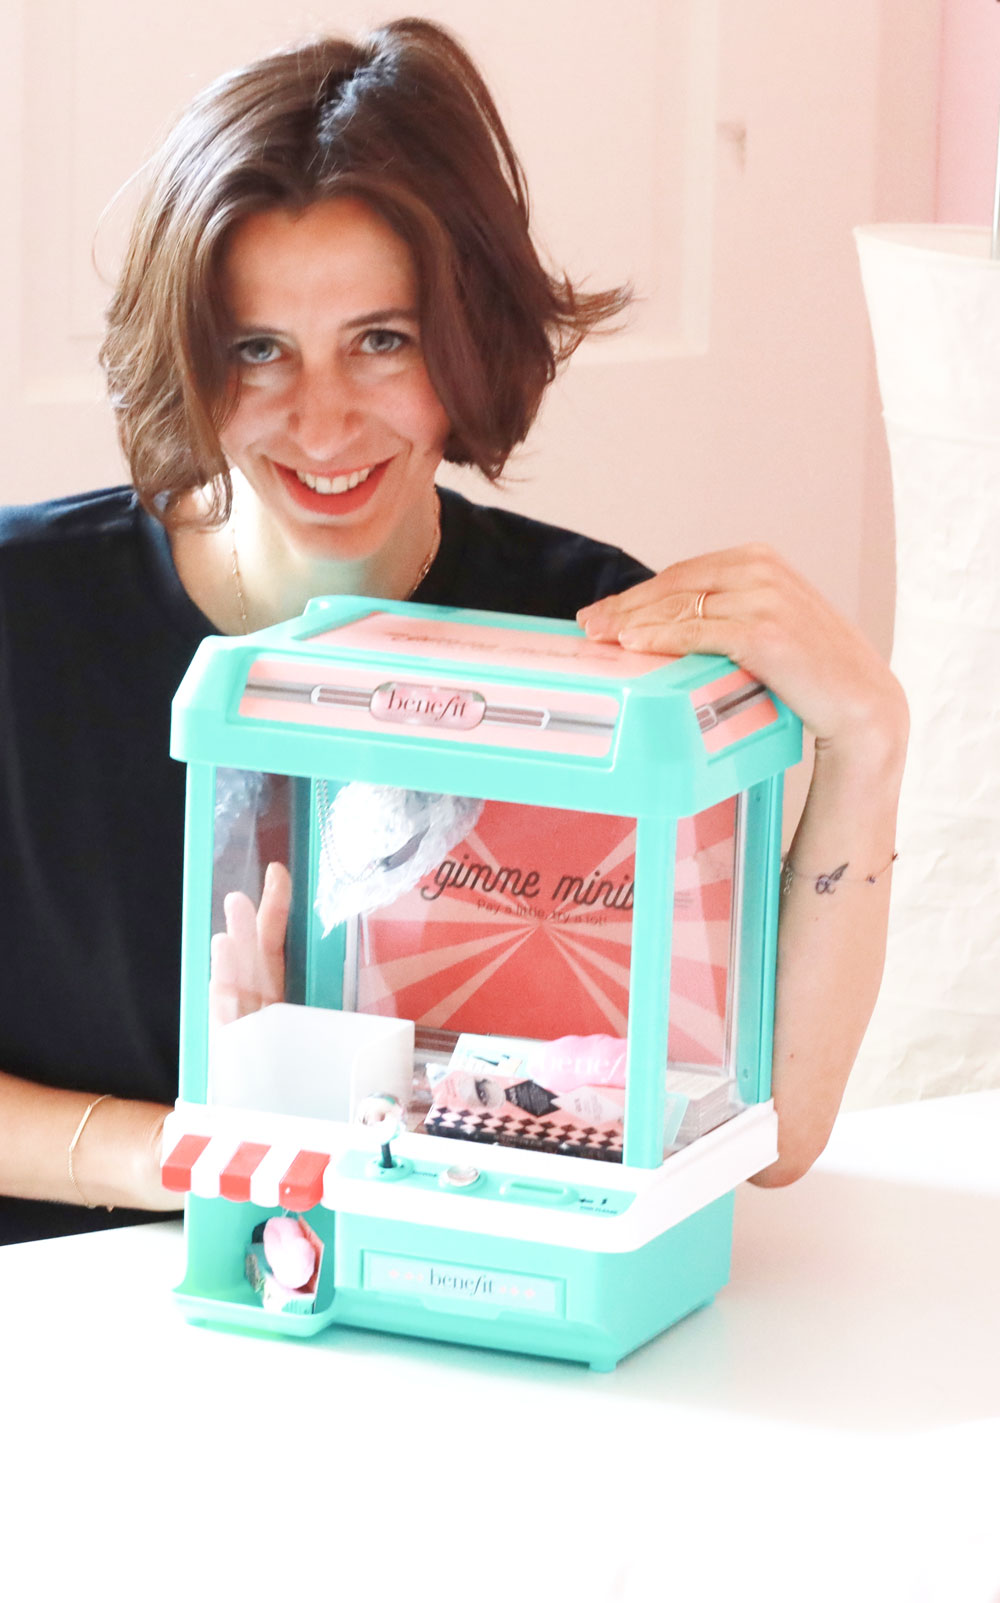 You can win: sonrisa verlost eine exklusive Beauty-Greifmaschine mit Makeup-Minis von Benefit